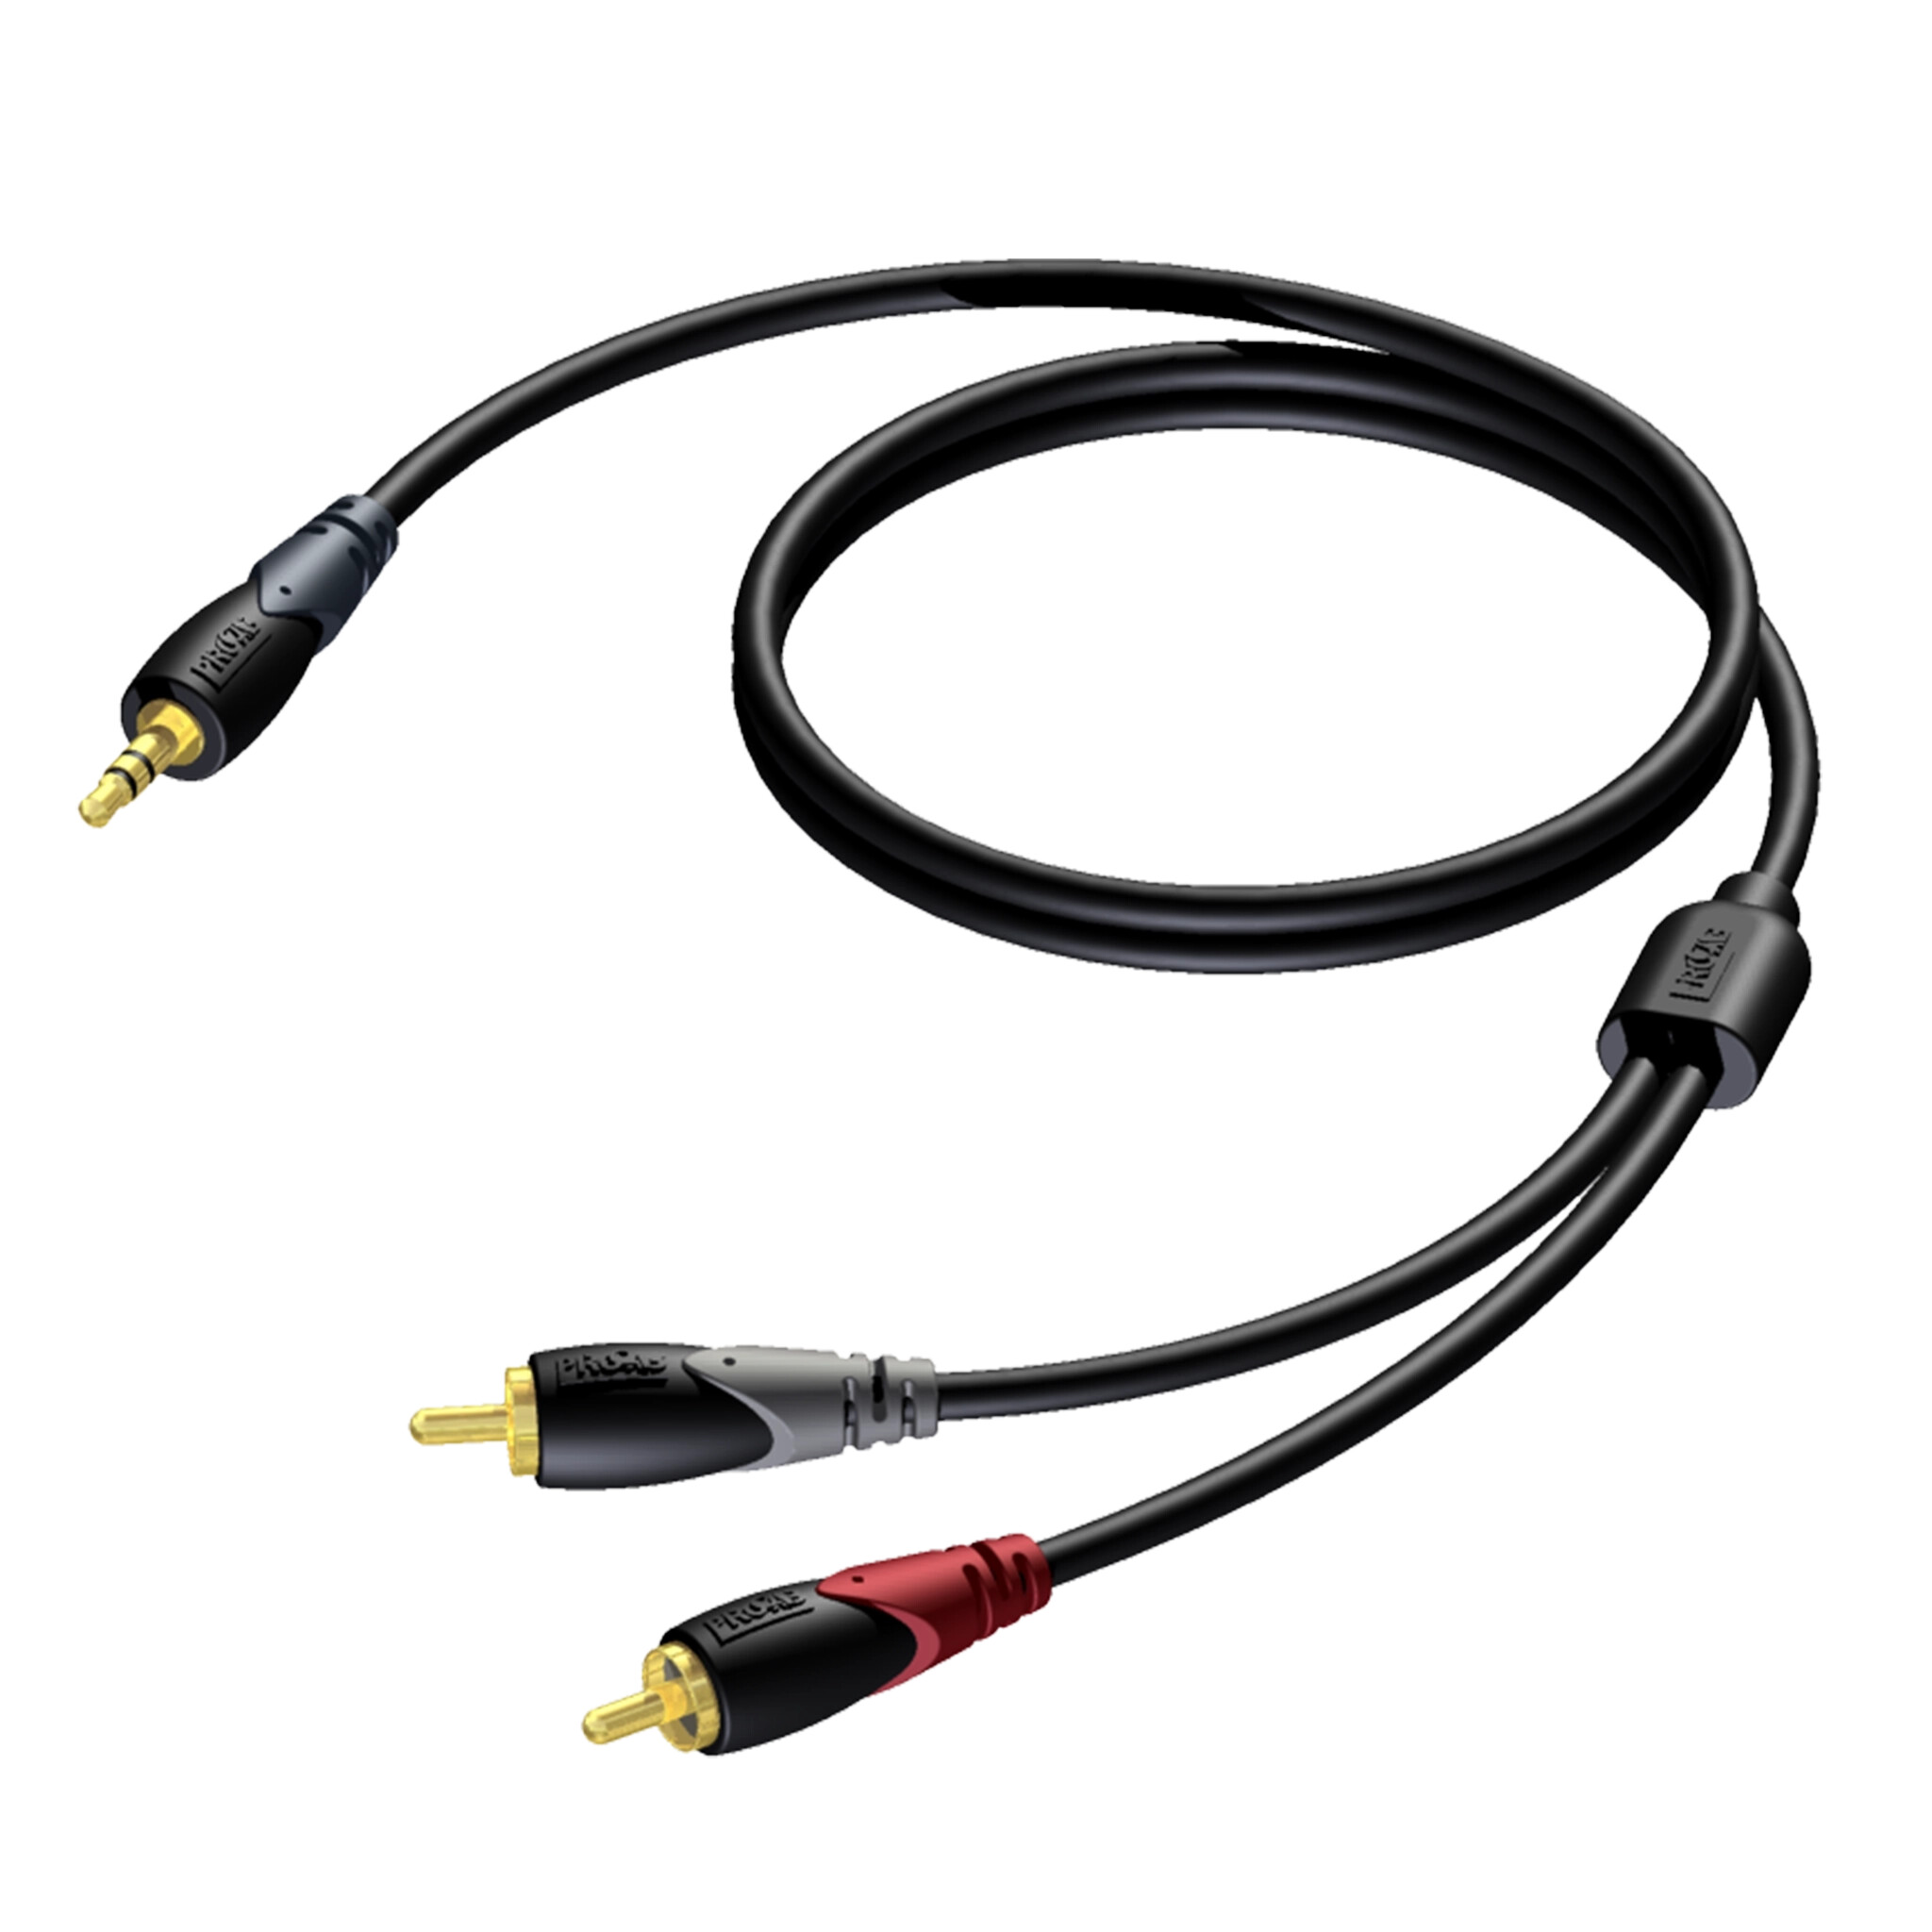 Procab-CLA711-3-5-mm-Klinkenstecker-Stereo-Kabel-20m